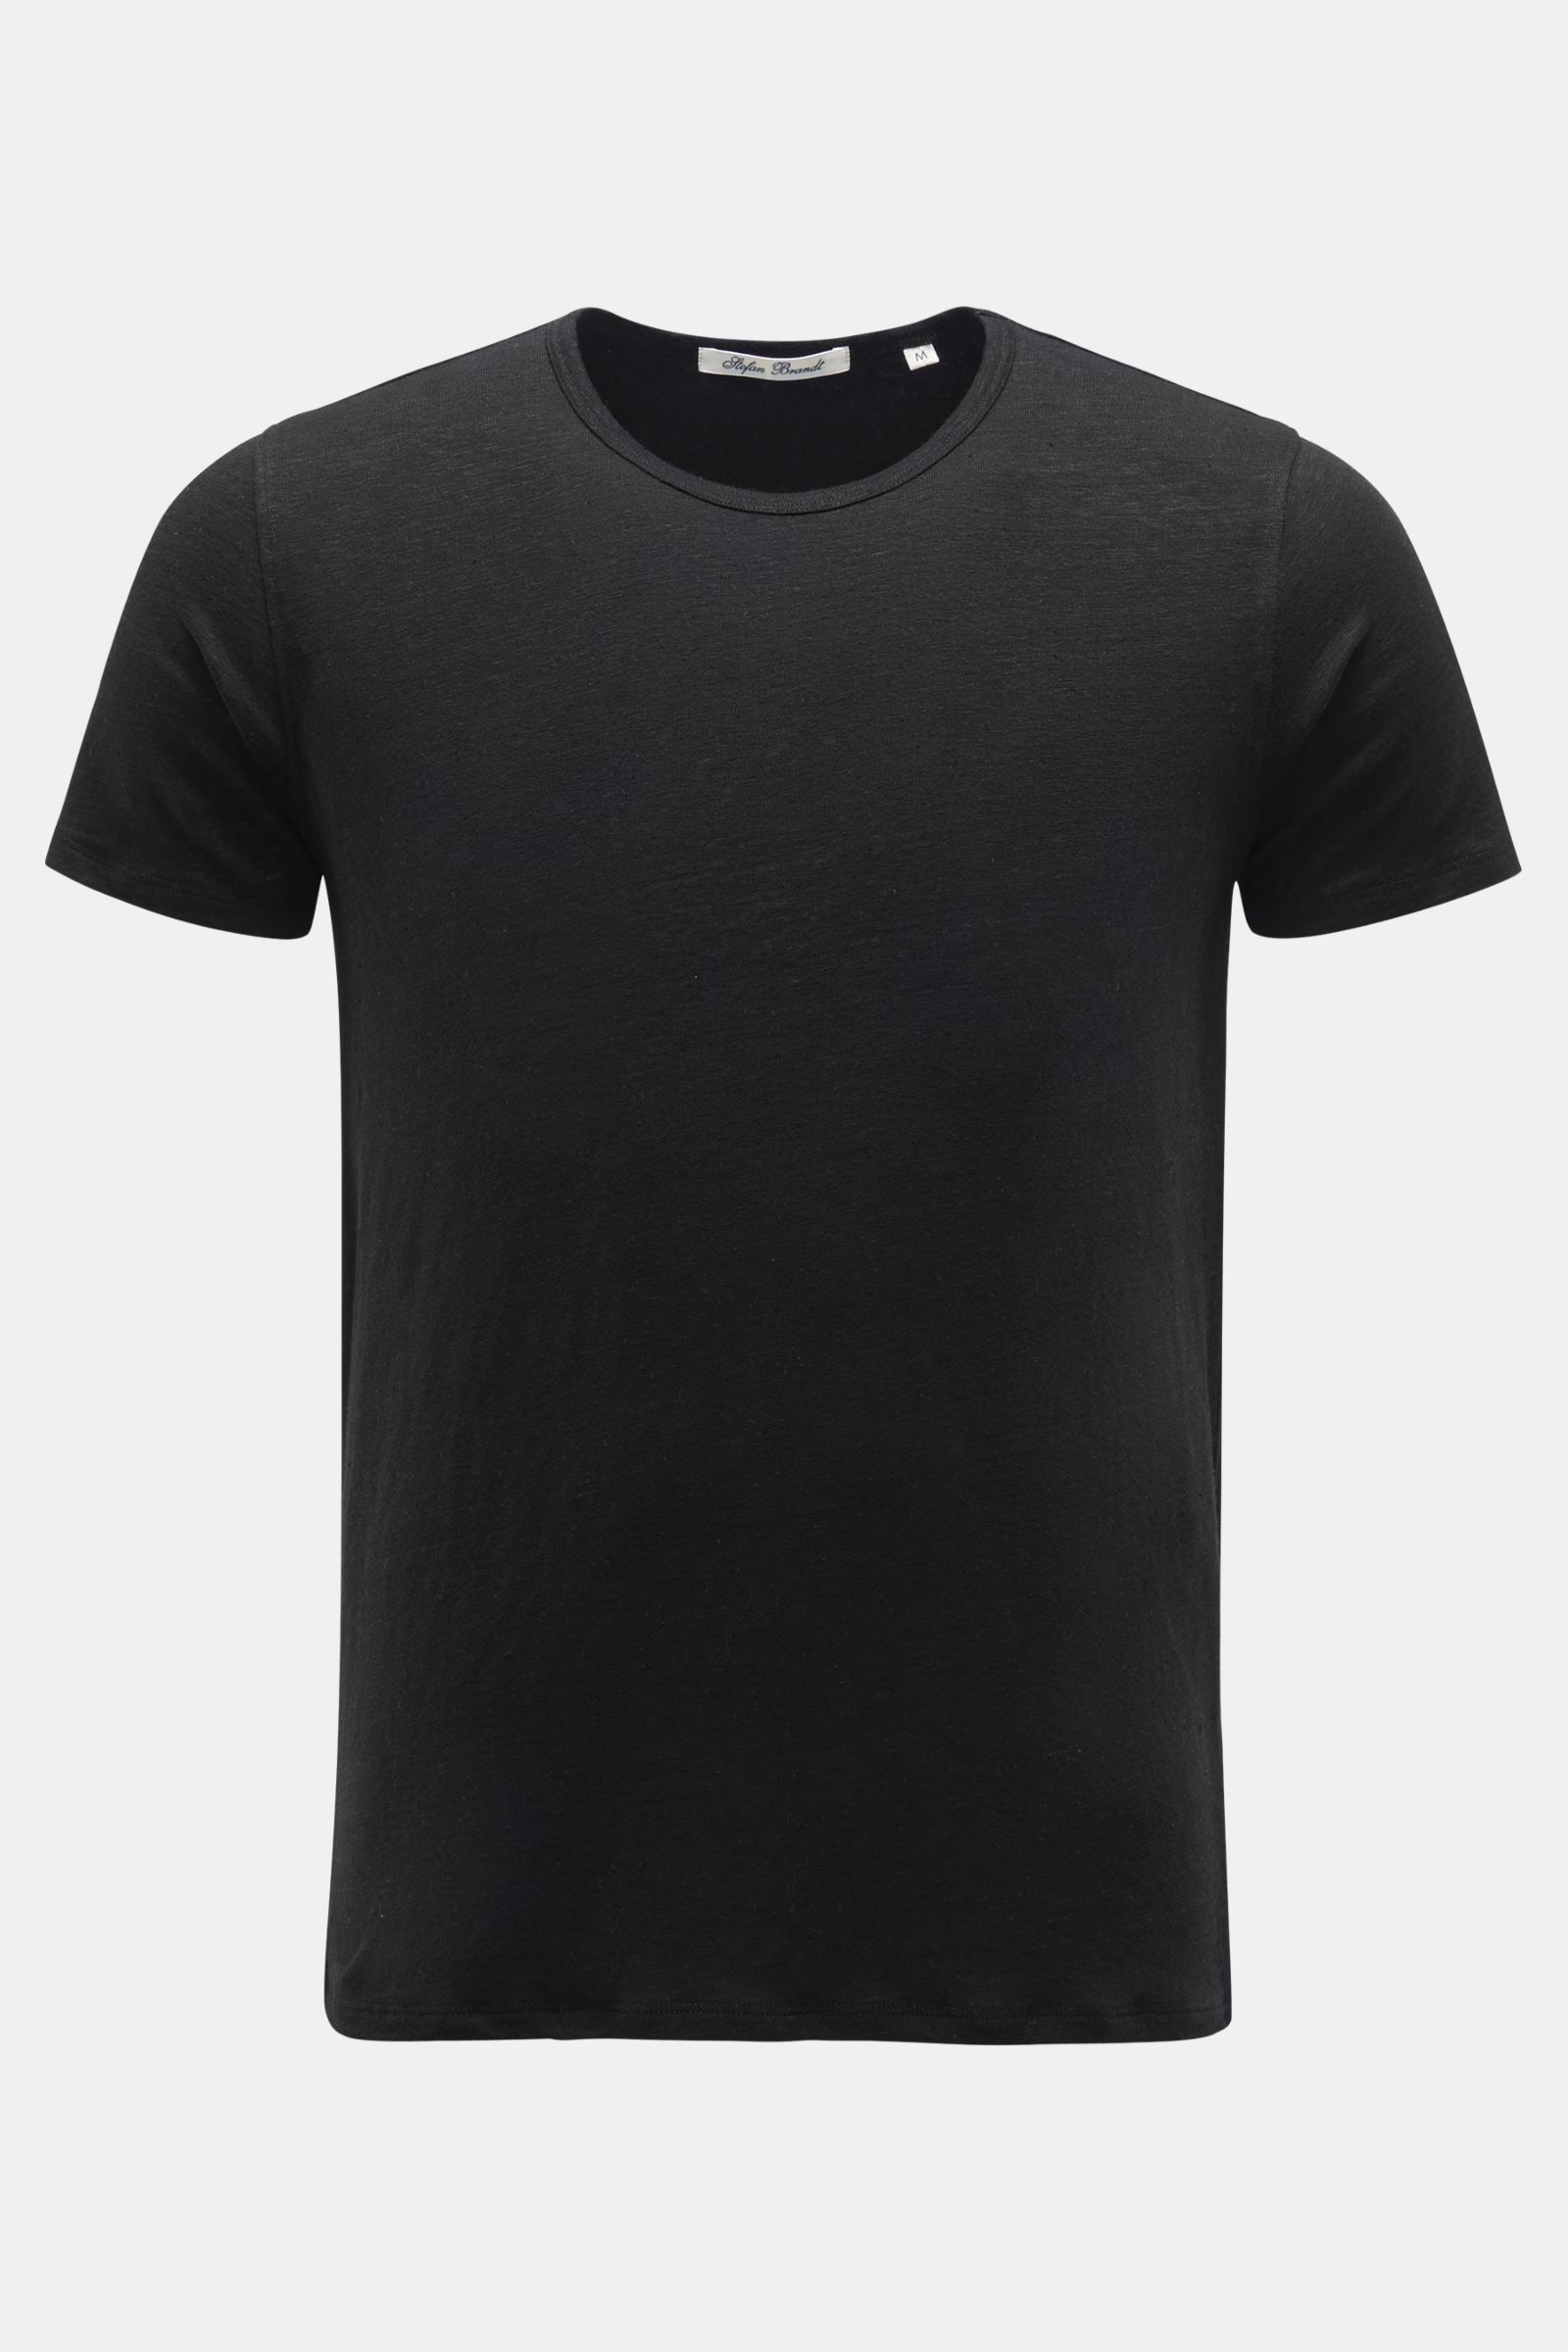 Leinen Rundhals-T-Shirt schwarz